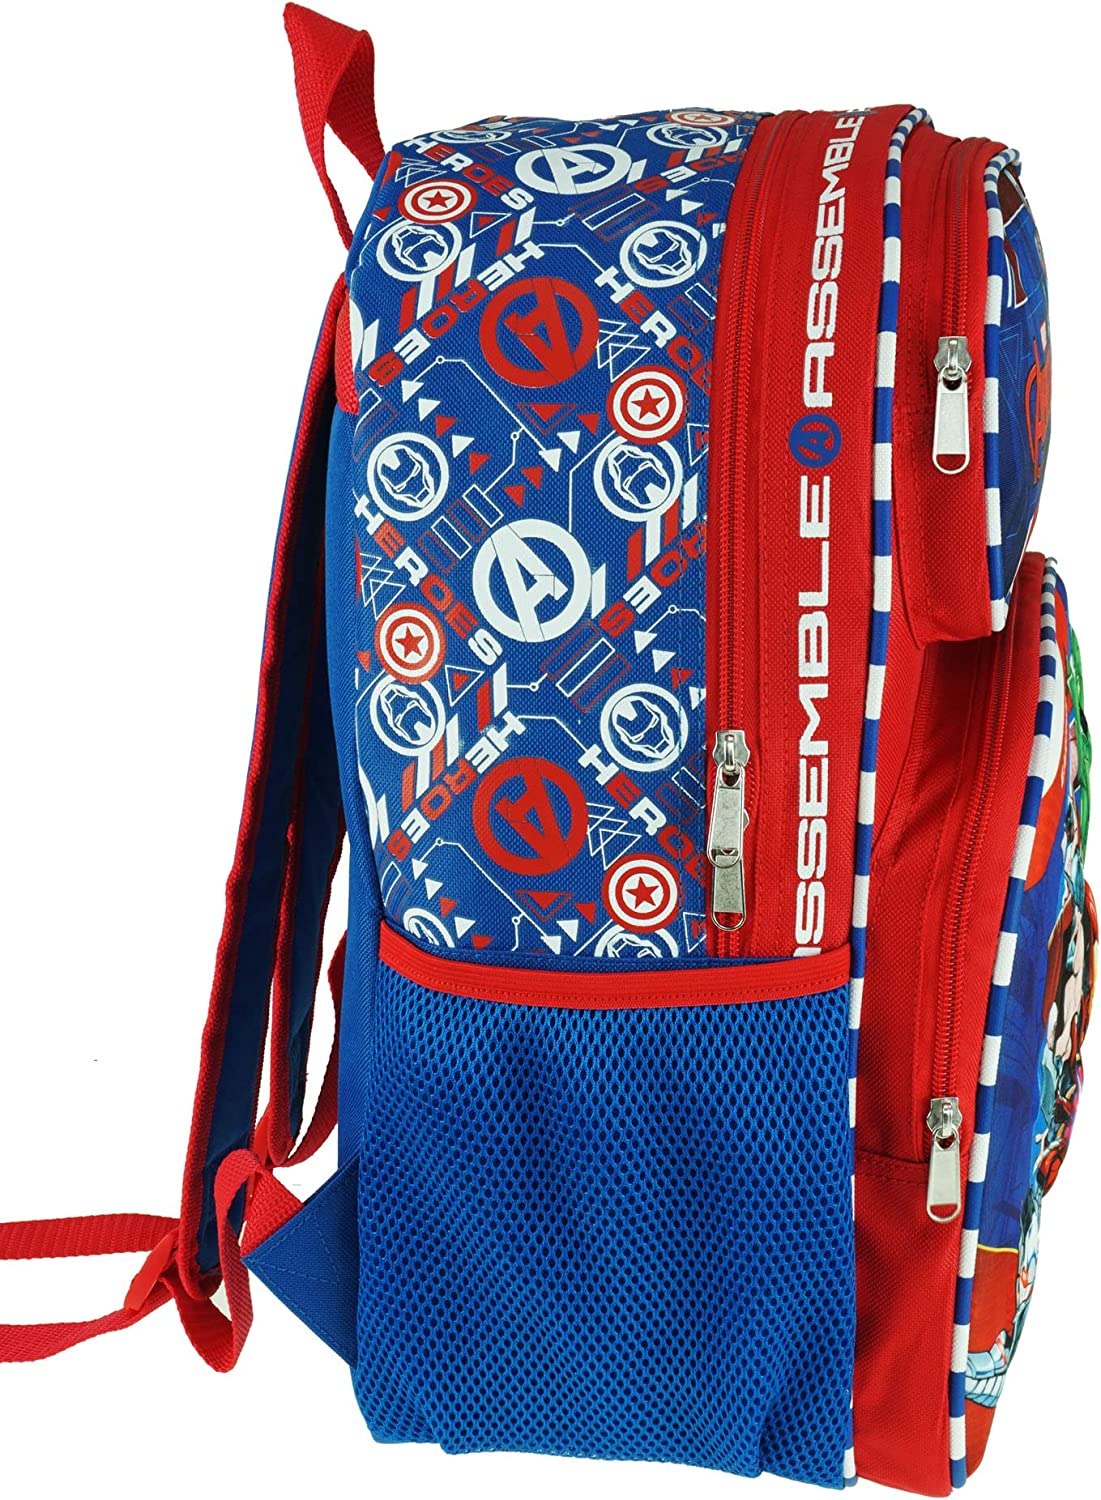 Marvel - Avengers 16" Large 3D EVA Molded Backpack